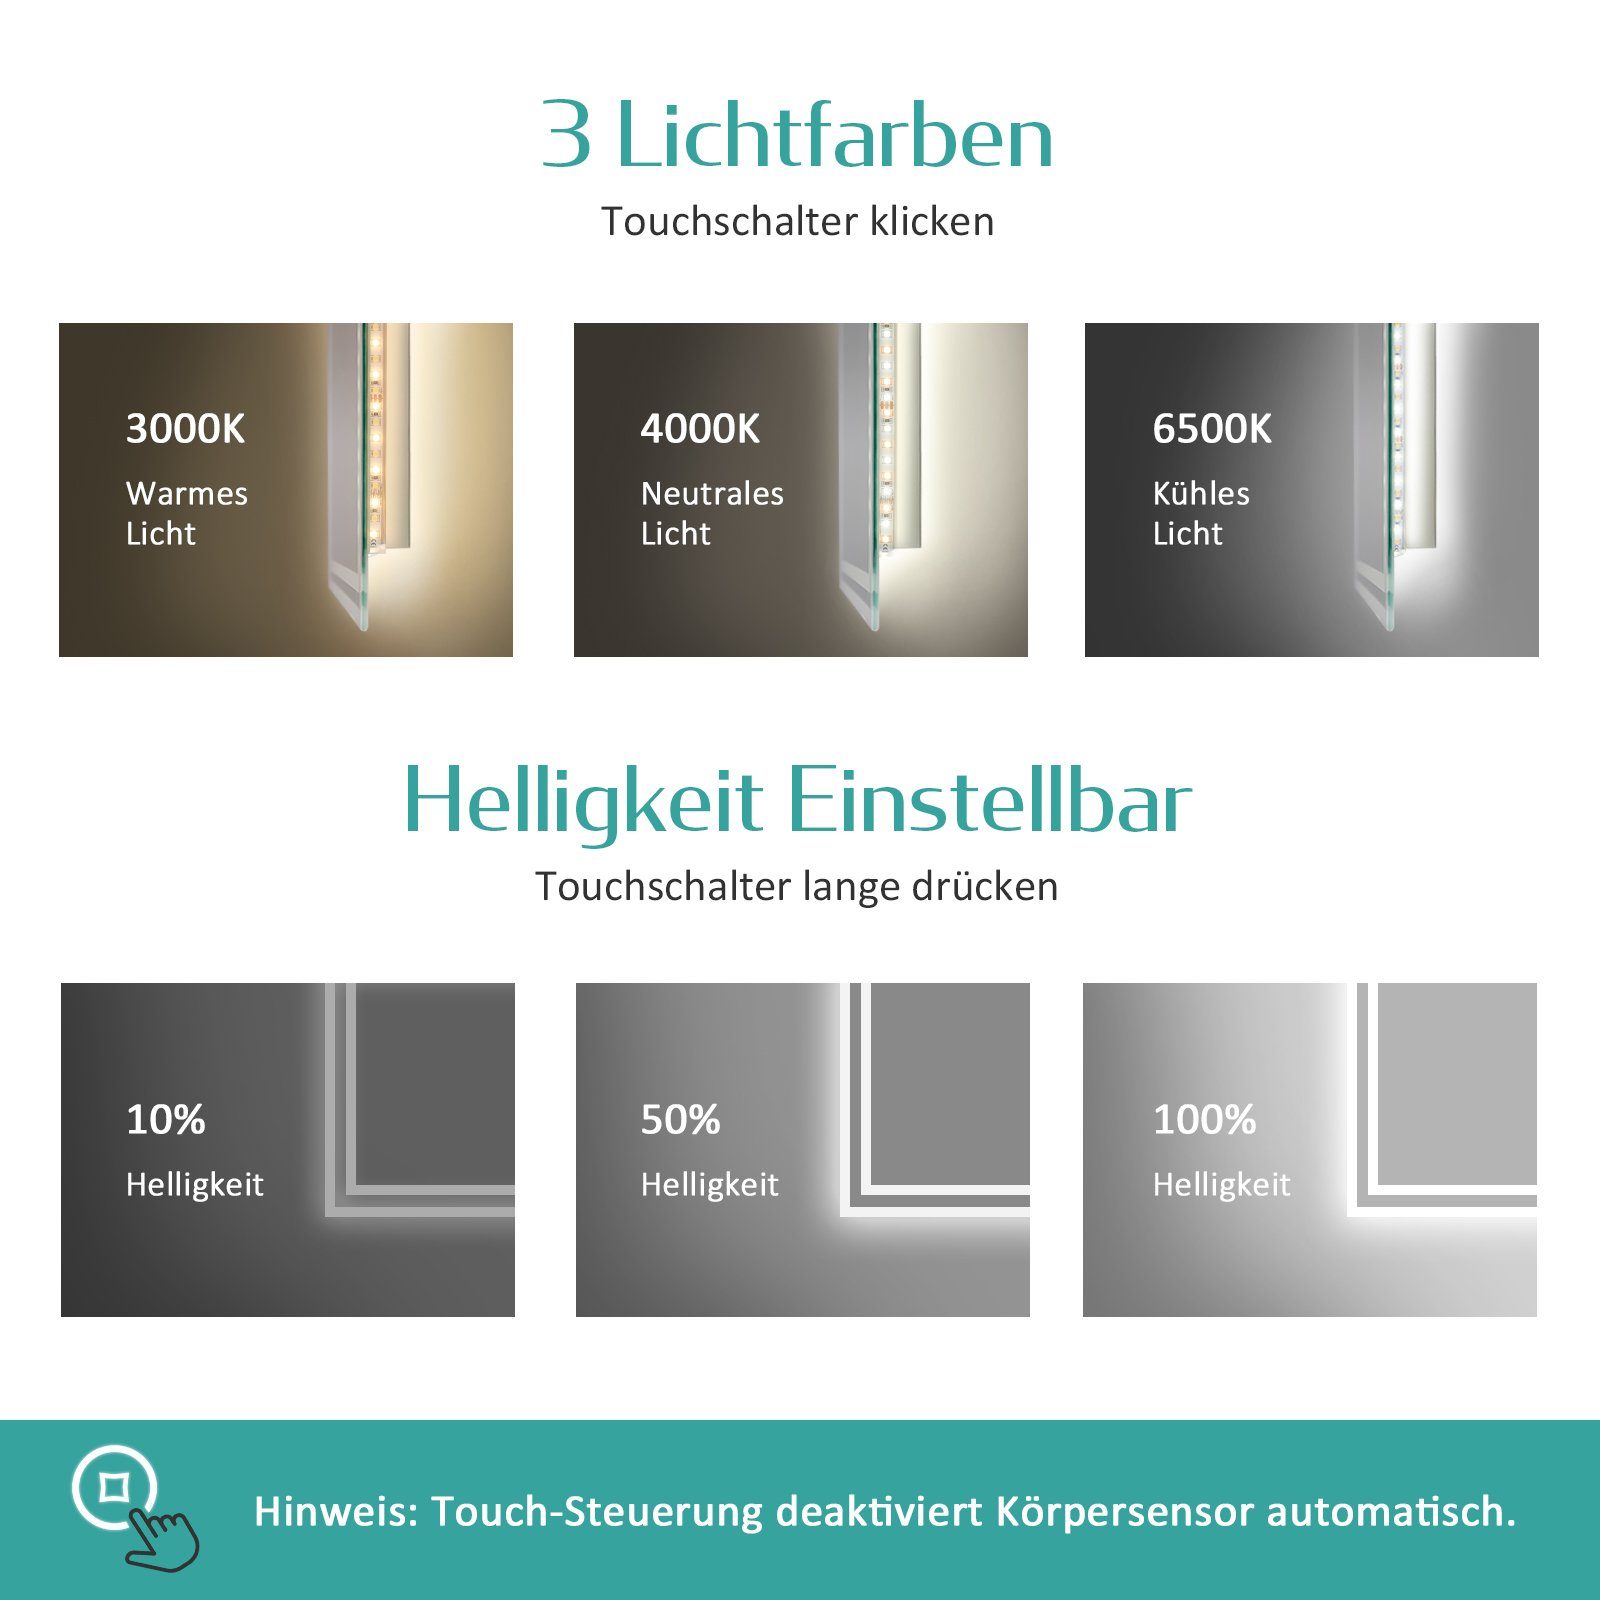 EMKE Badspiegel LED Badspiegel mit Wandspiegel, Farben Beleuchtung Beschlagfreiheit, mit Touch-Schalter und Lichts Dimmbarem Bewegungssensor des 3